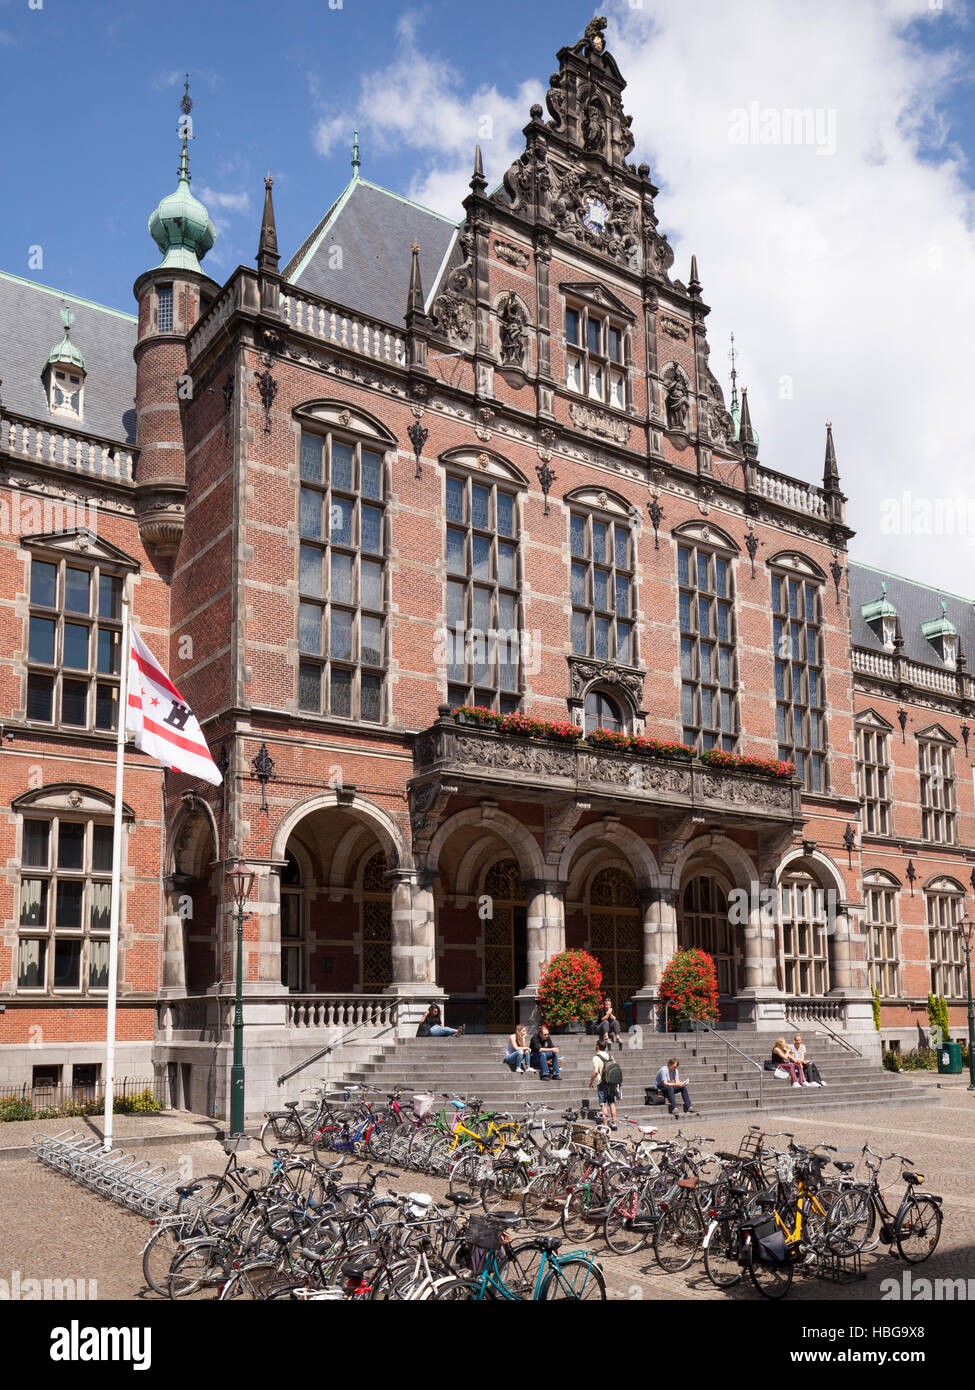 University of Groningen, Groningen, The Netherlands Stock Photo